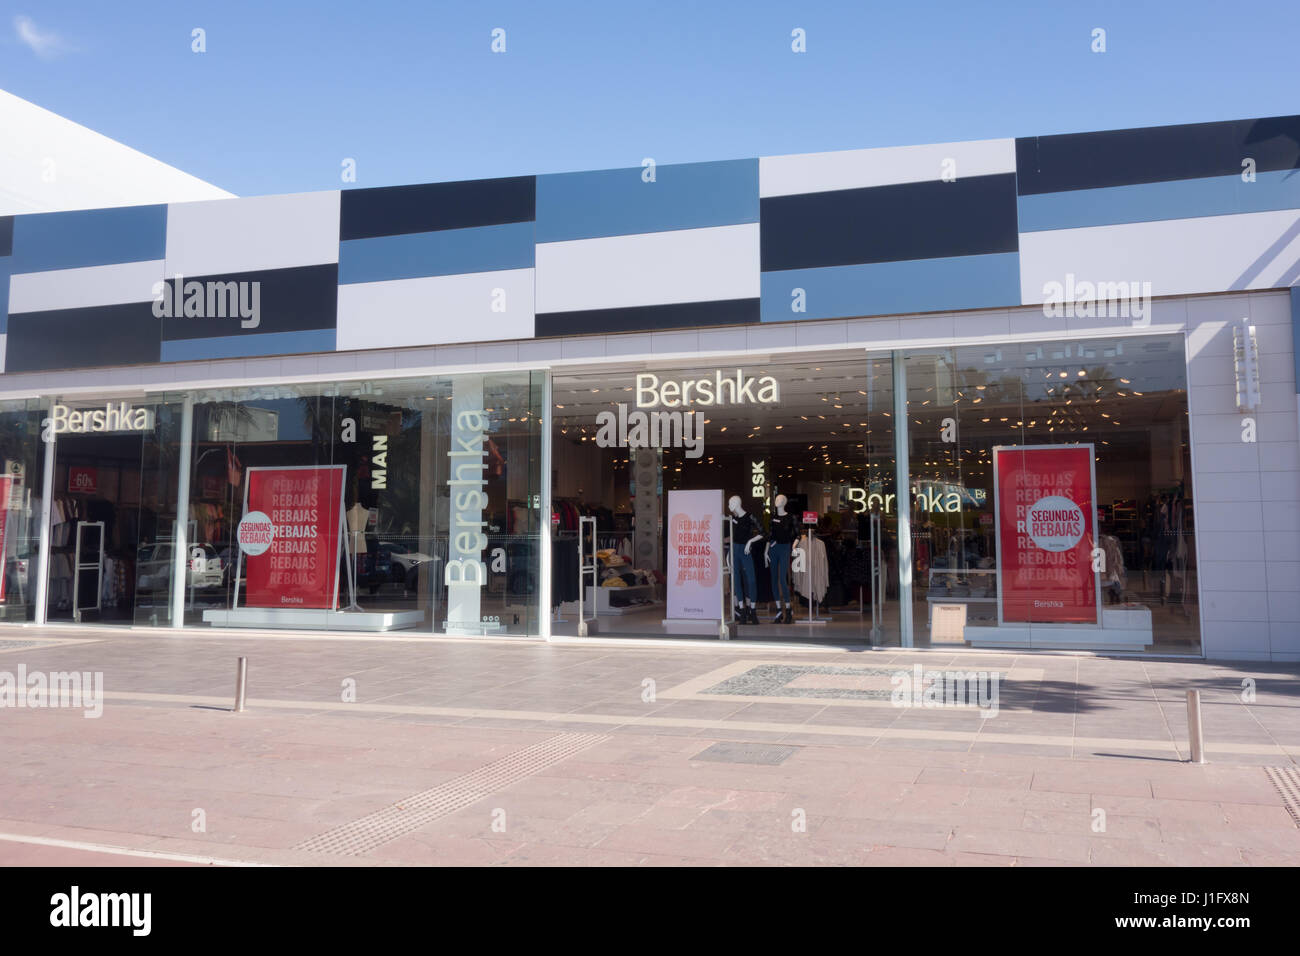 Bershka ist ein spanischer Kleidung Einzelhändler im April 1998 gegründet  und betreibt mehr als 1000 Filialen weltweit. Ihre Muttergesellschaft ist  Inditex, der auch Zara besitzt Stockfotografie - Alamy